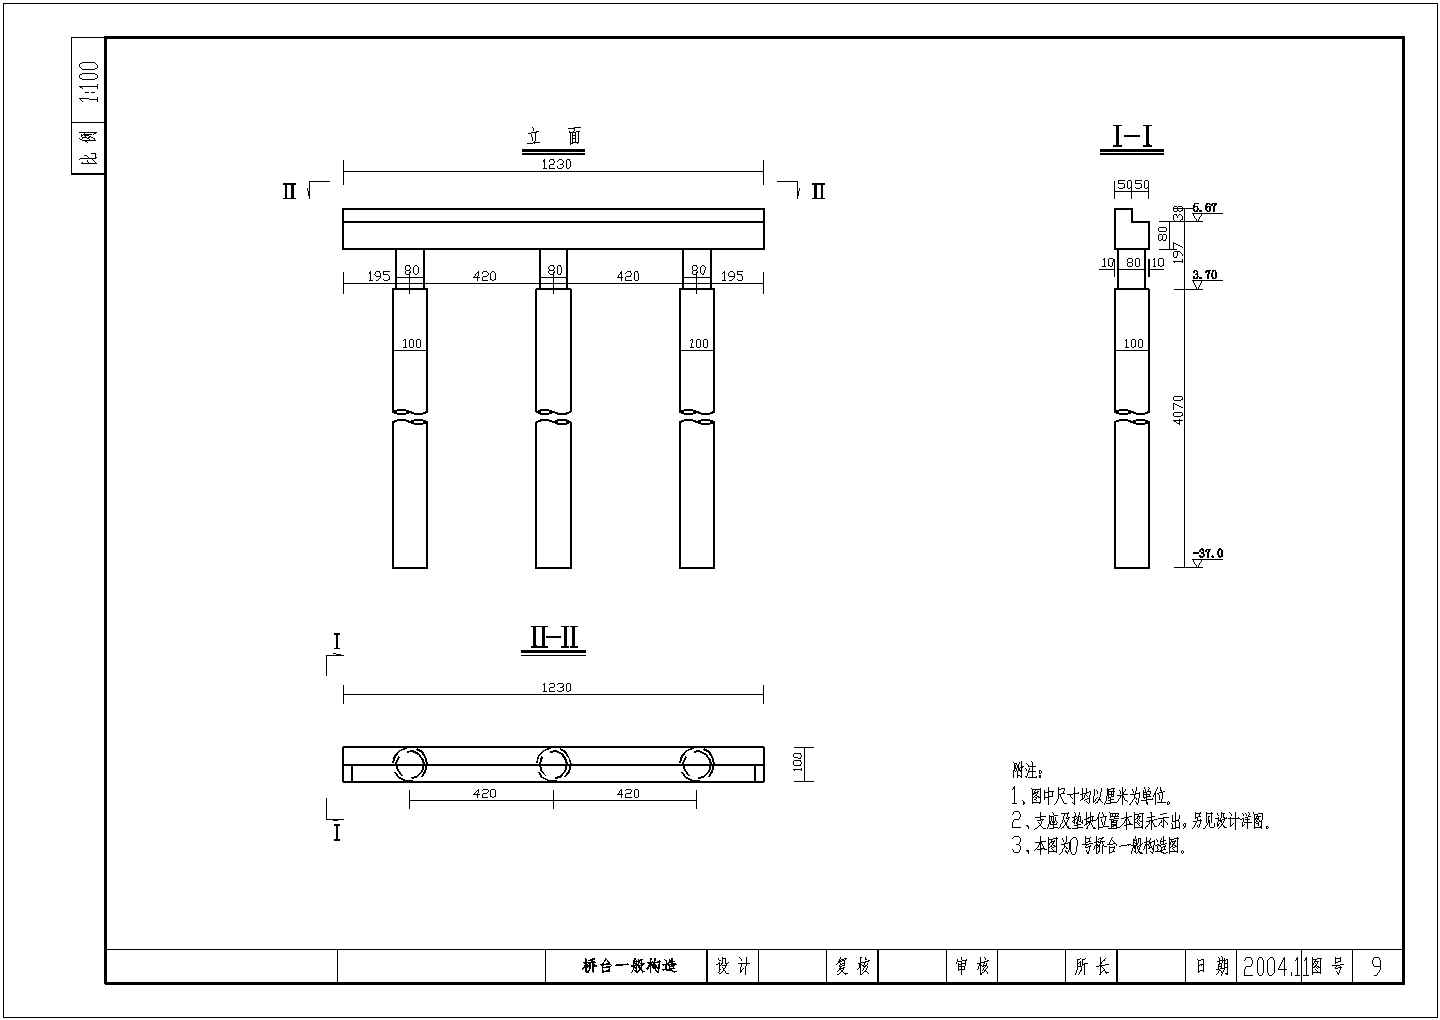 钢筋混凝土平板桥桥台一般构造节点详图设计